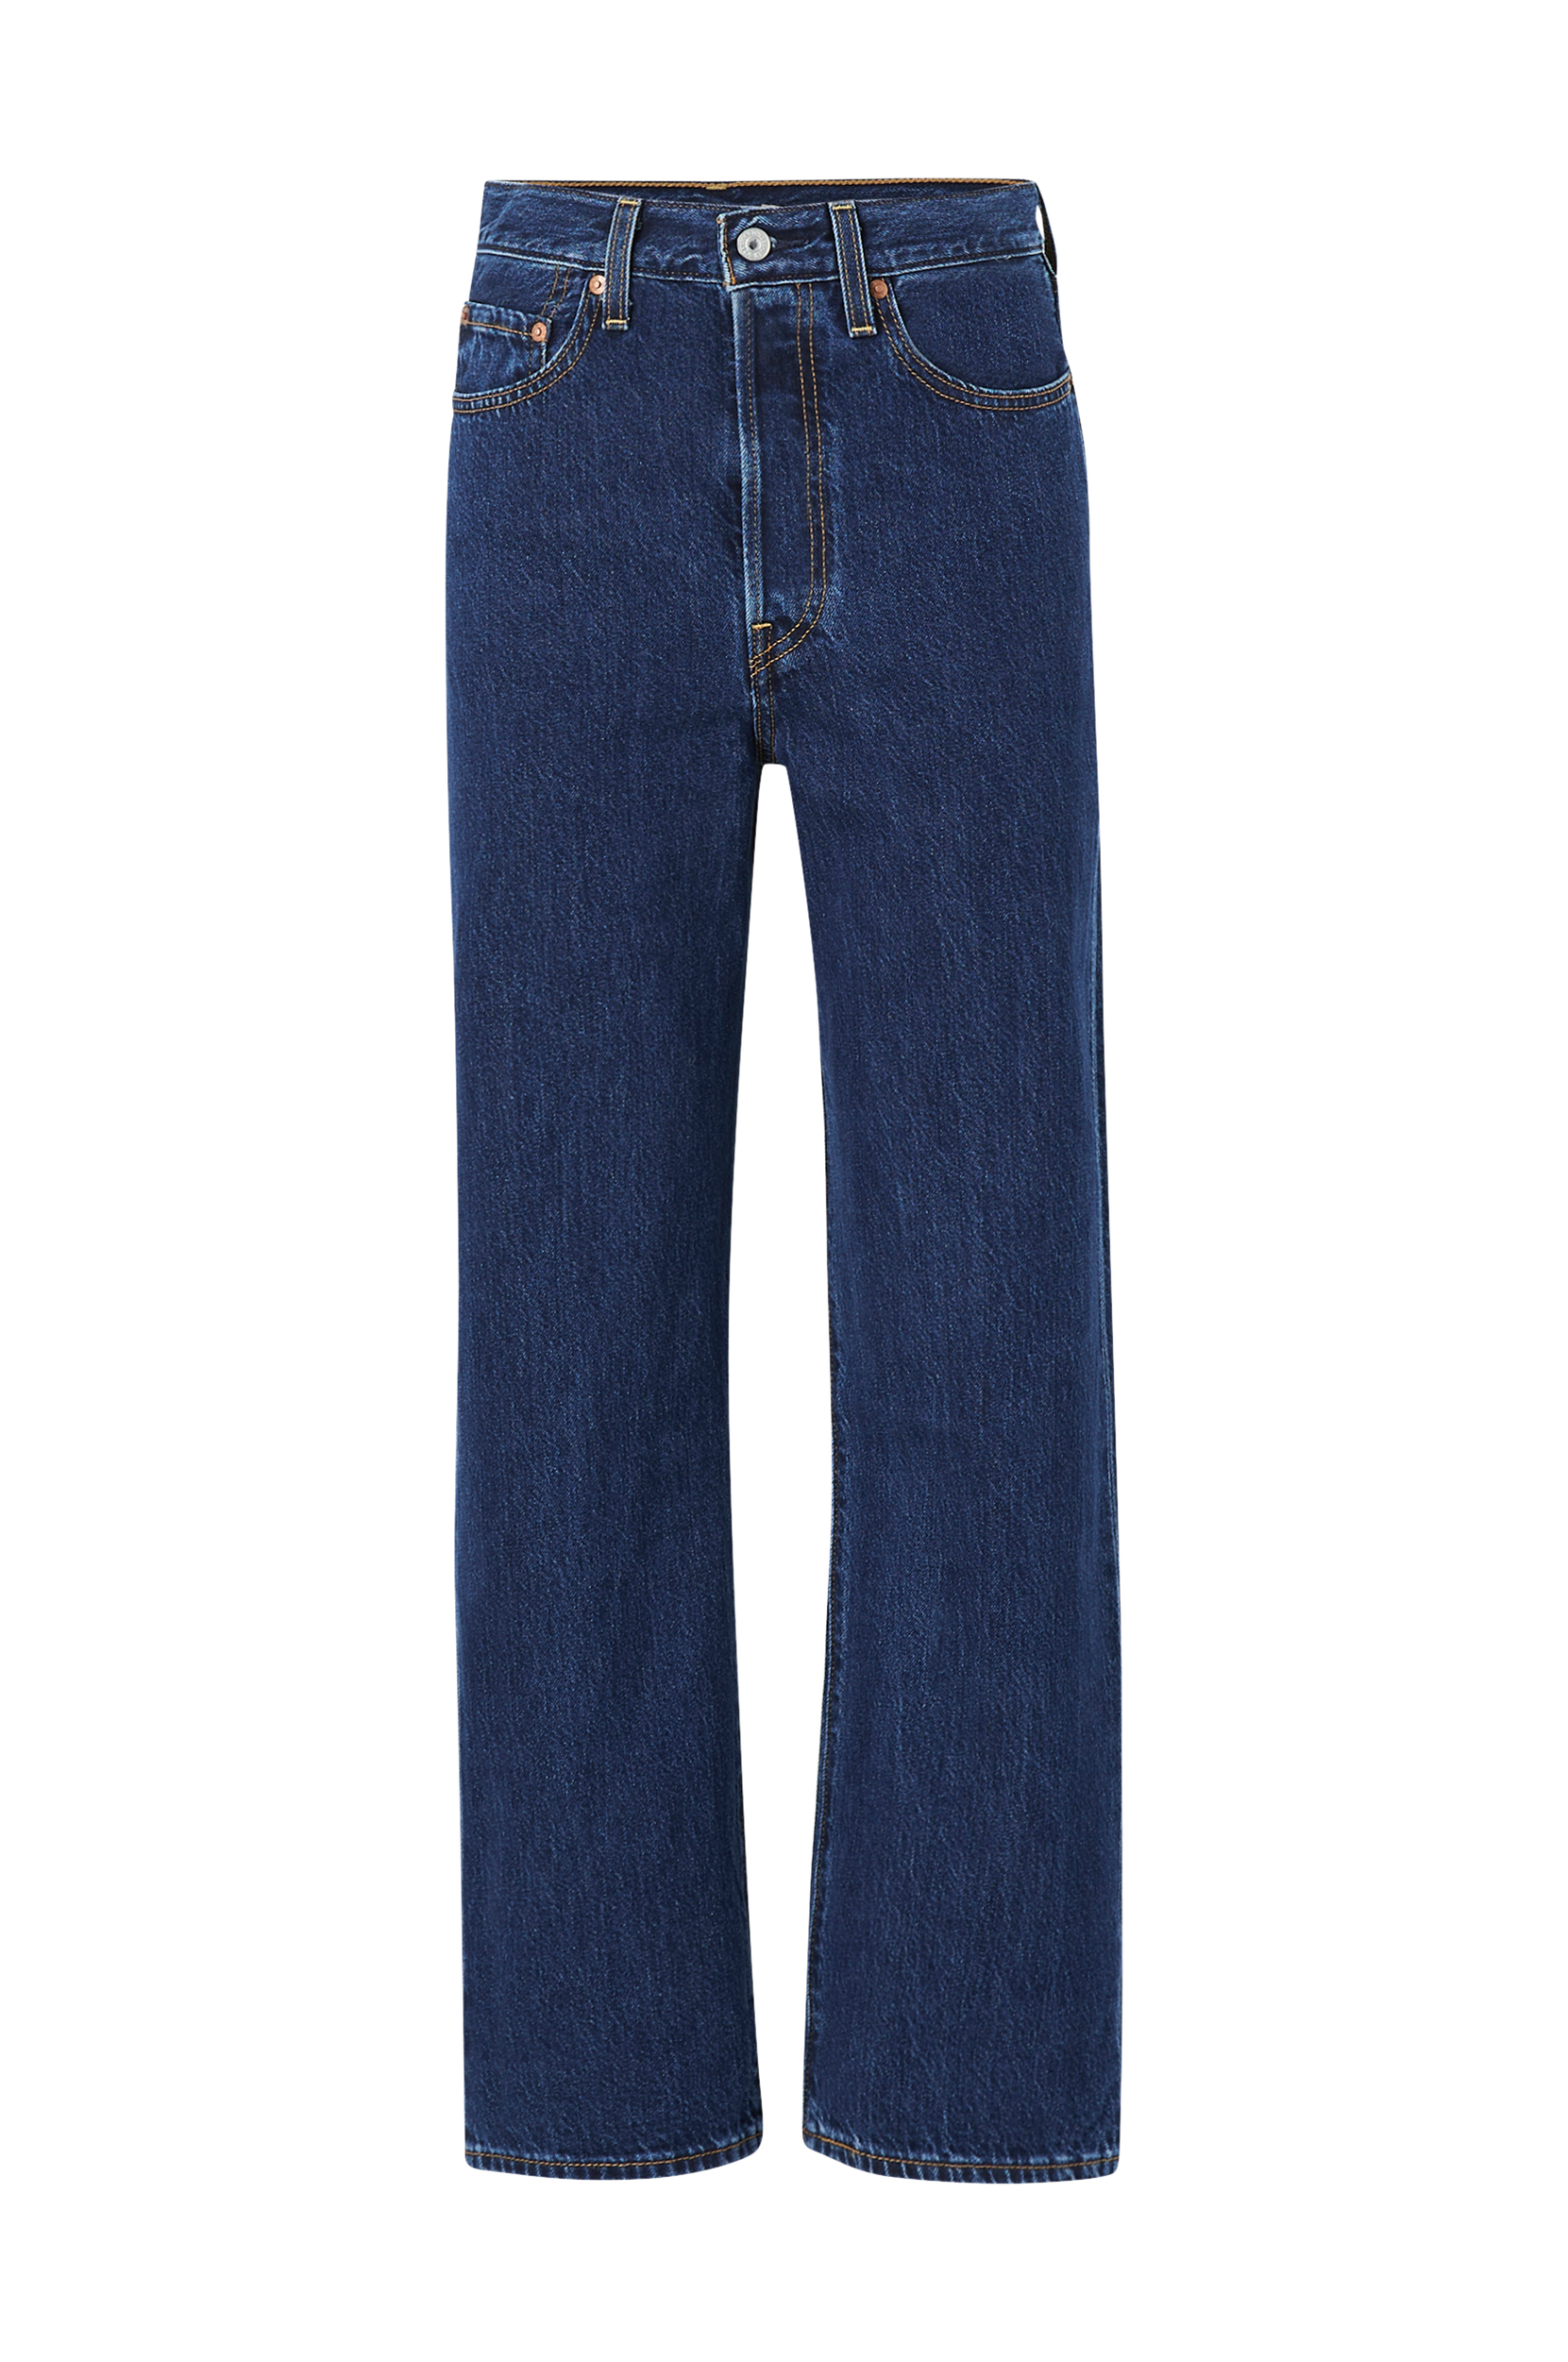 Måned At understrege træt Levi's - Jeans Ribcage Straight Ankle Tango - Blå - Jeans - Tøj til kvinder  (31090763)